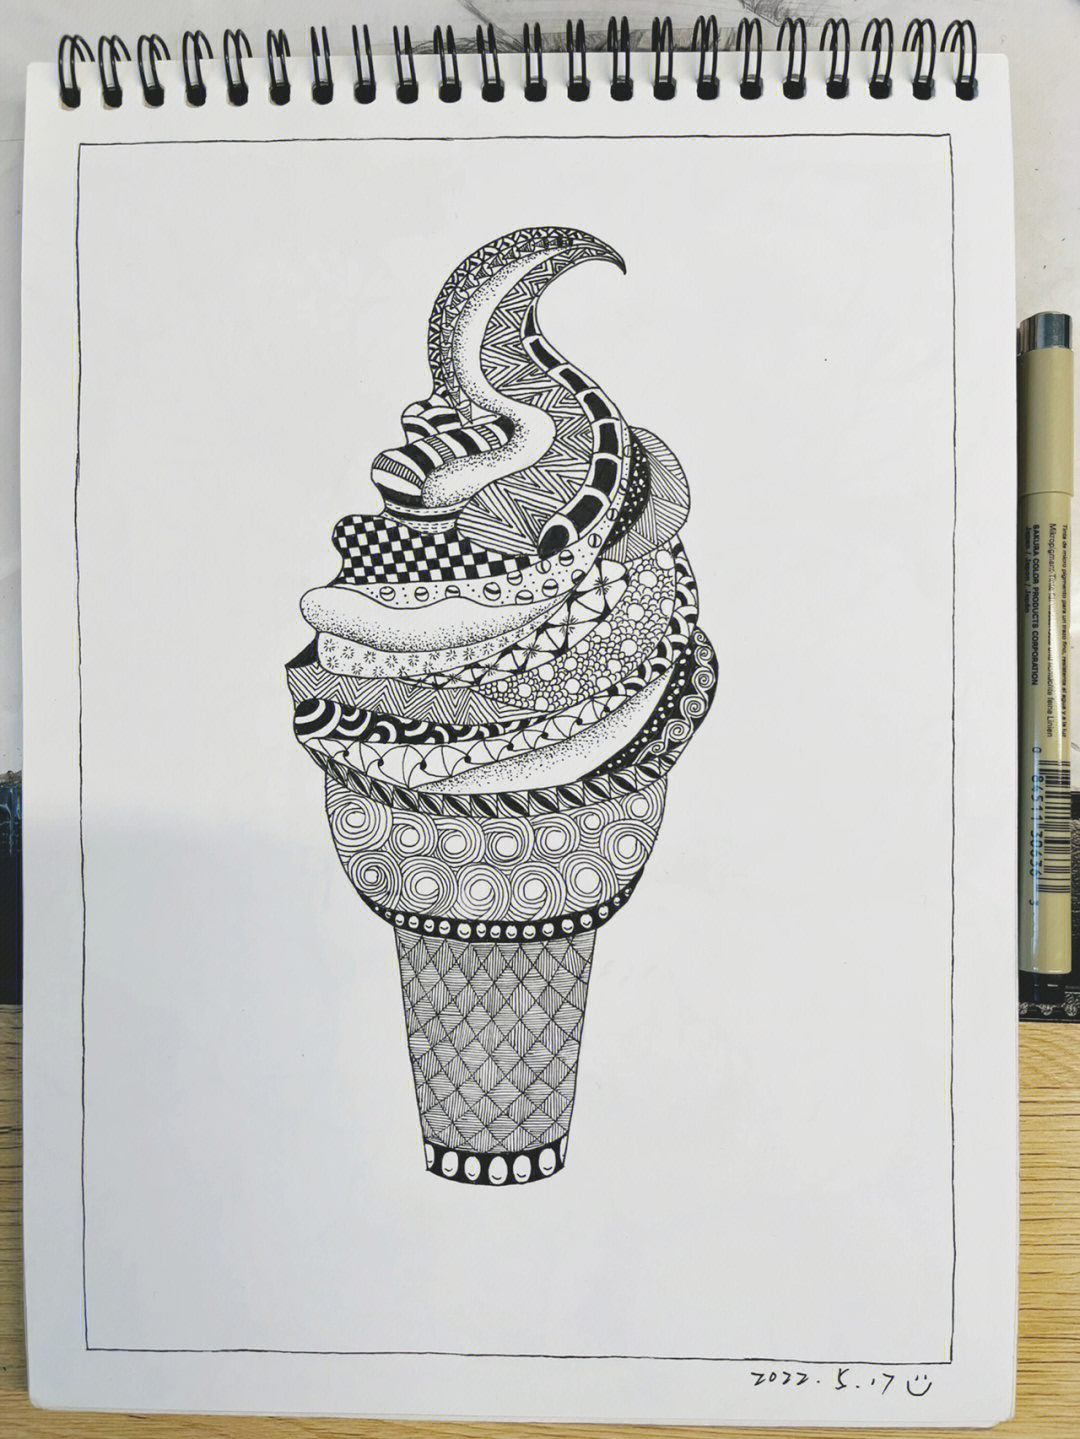 冰淇淋线描画图片大全图片